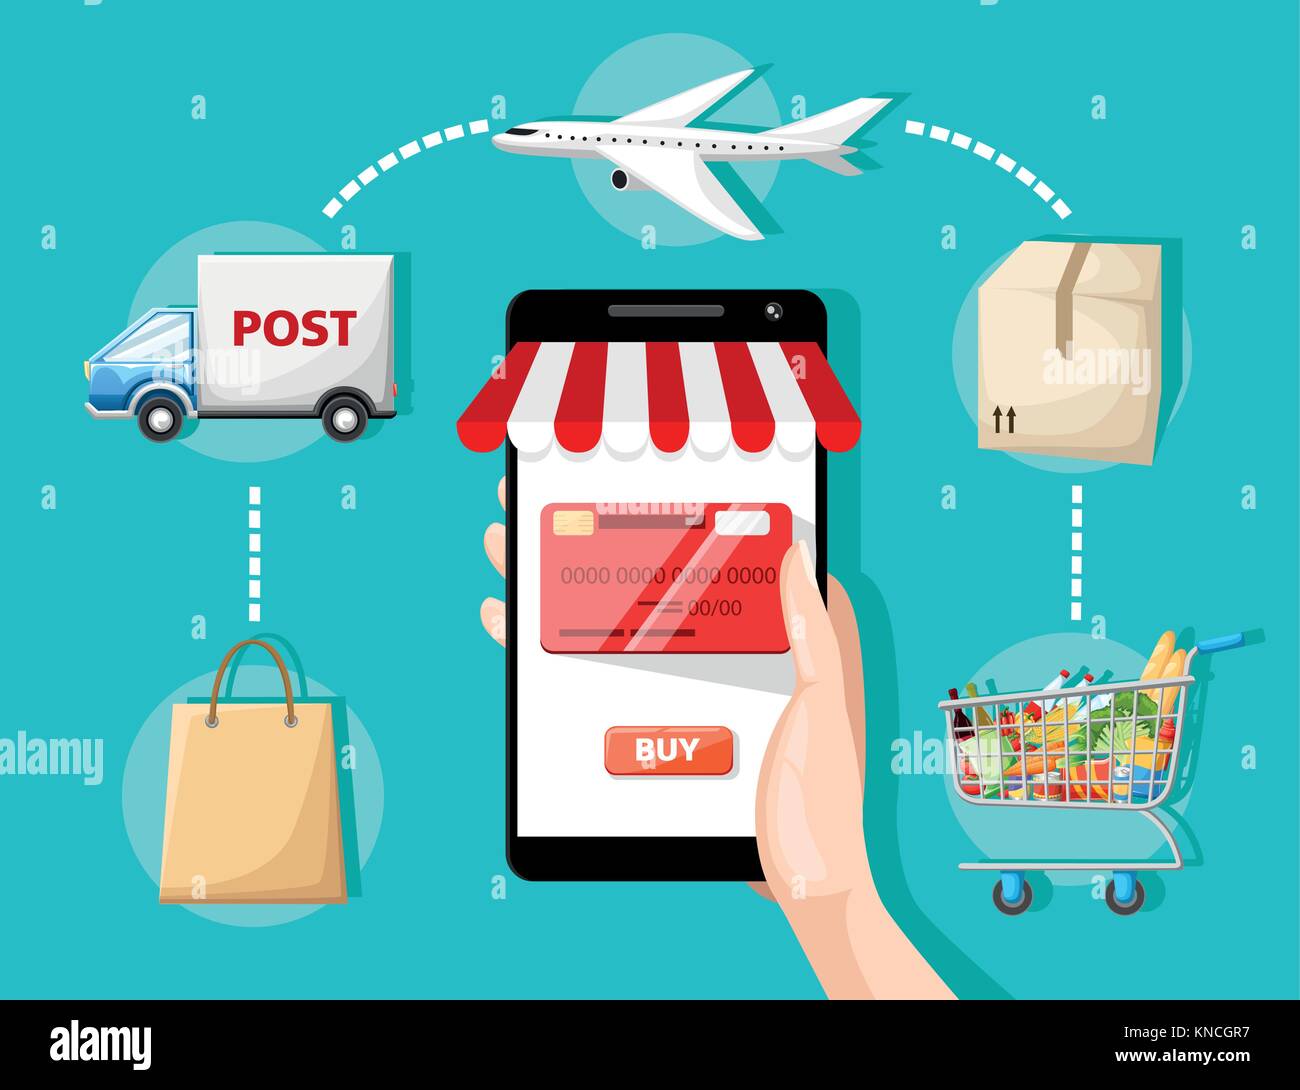 Flache vektor design mit e-Commerce und Online shopping Symbole und Elemente für mobile Geschichte Symbole der Shop online Zahlung Service und liefern Stock Vektor